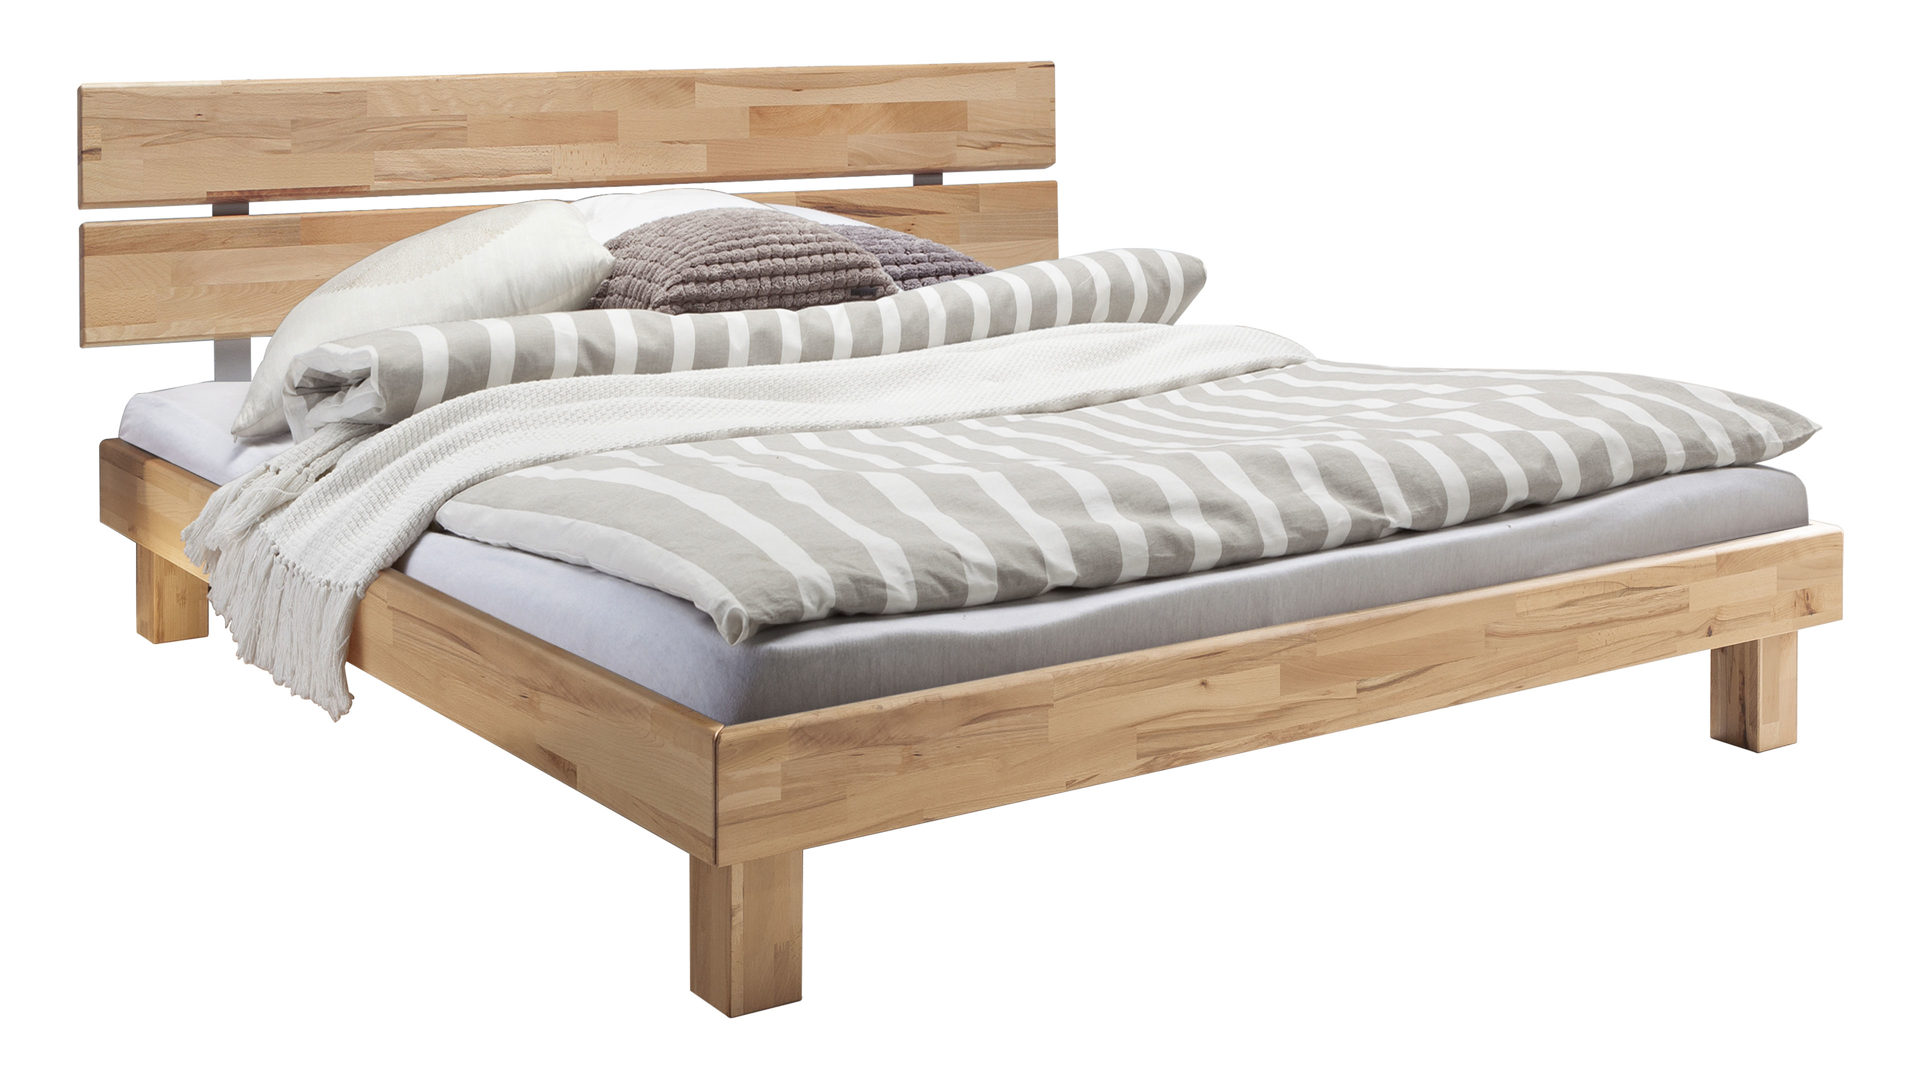 Doppelbett Neue modular aus Holz in Holzfarben Massivholz-Bettgestell, ein Futonbett mit Komfort natur geöltes Kernbuchenholz - Liegefläche ca. 180 x 200 cm